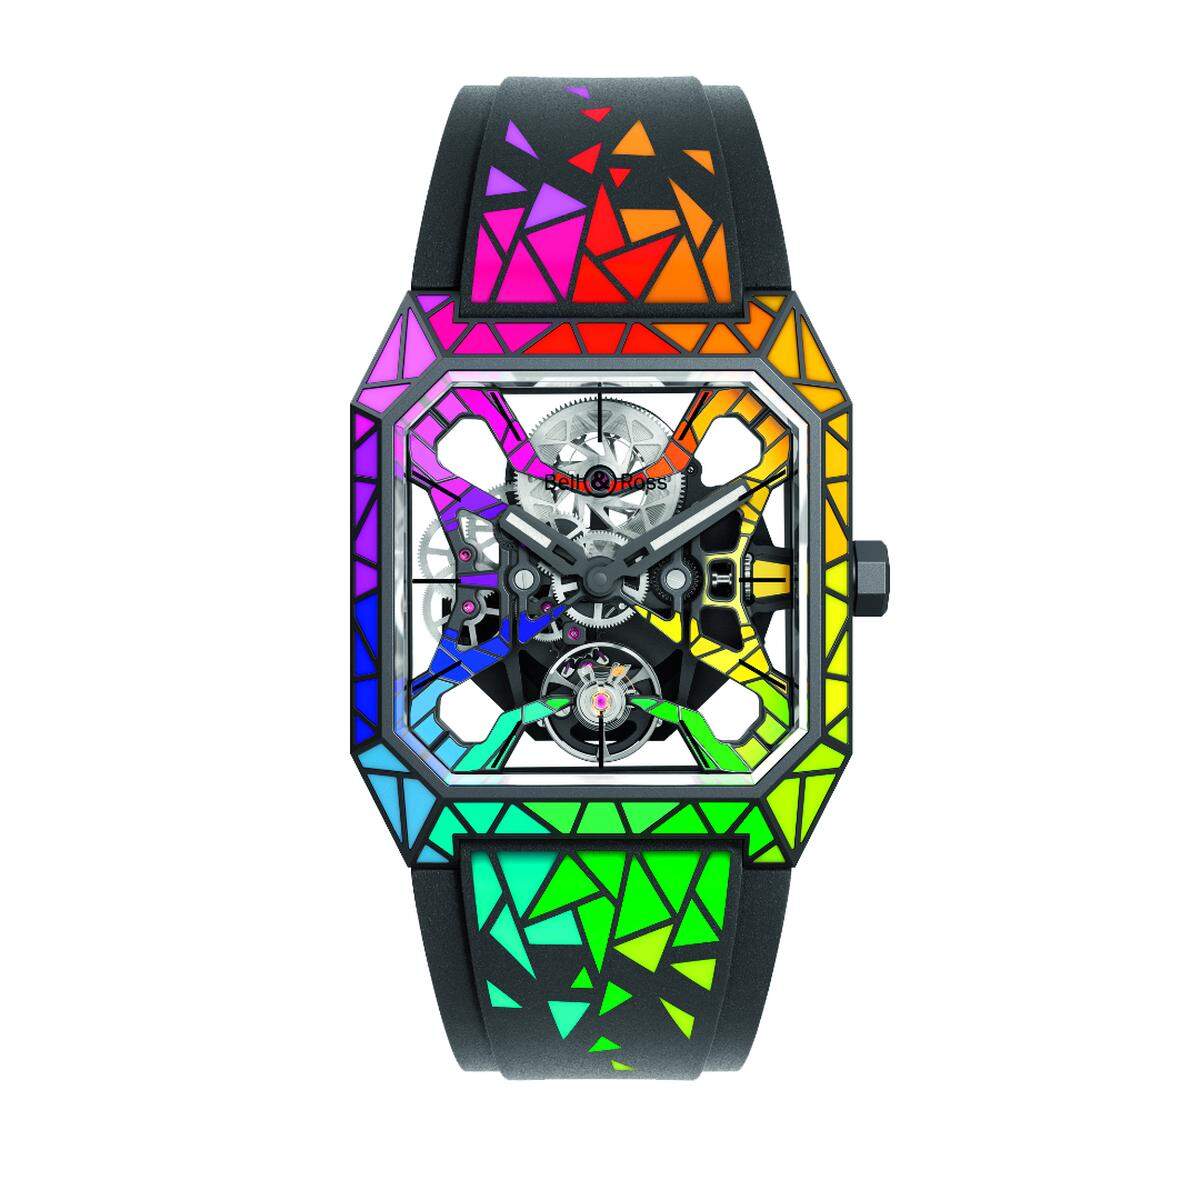 Bell & Ross „BR03 Cyber Rainbow S“. Für Only Watch lässt Bell & Ross ihre „BR 03“ in einem neuen Licht erscheinen – mit farbig lackierten Teilen, die in einem Spezialverfahren aufgetragen wurden. Das skelettierte Uhrwerk und die bunten Brücken unterstreichen das spektakuläre Erscheinungsbild.